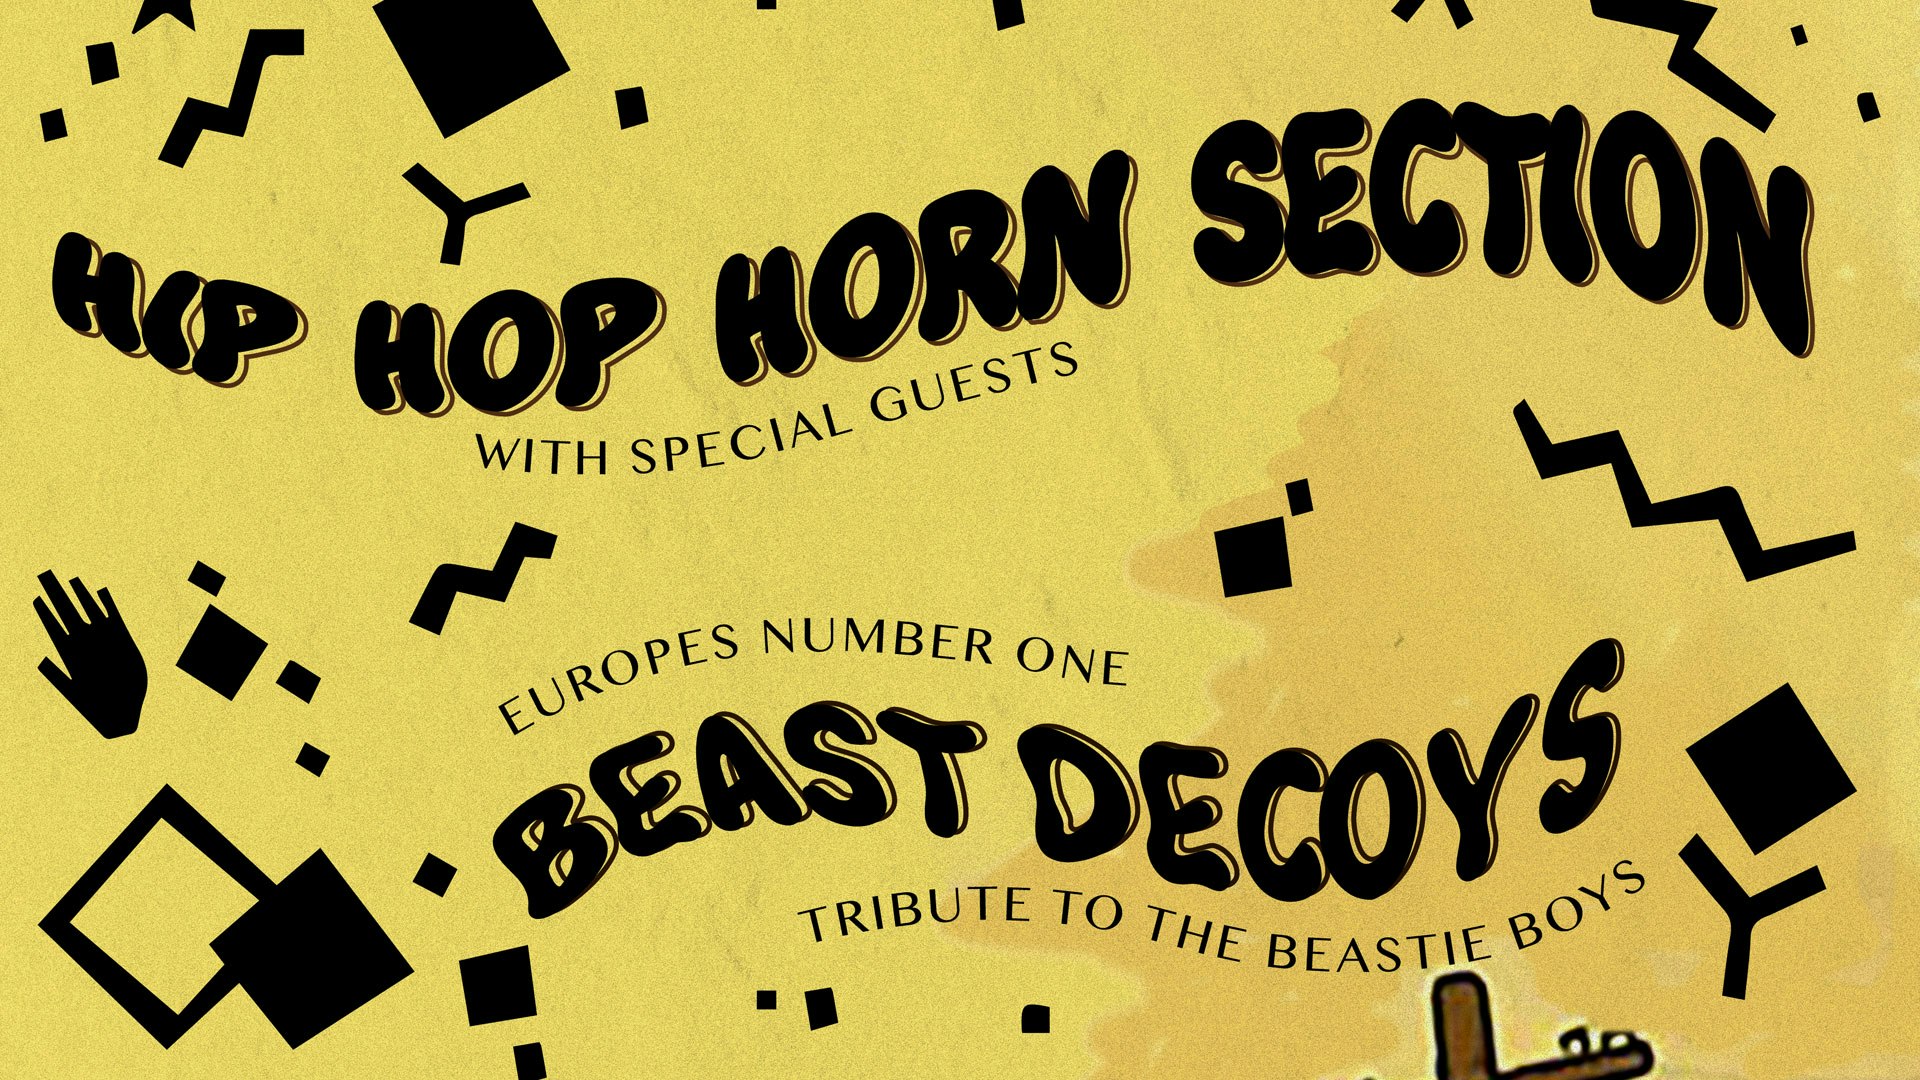 Hip Hop Horn Section + the Beast Decoys